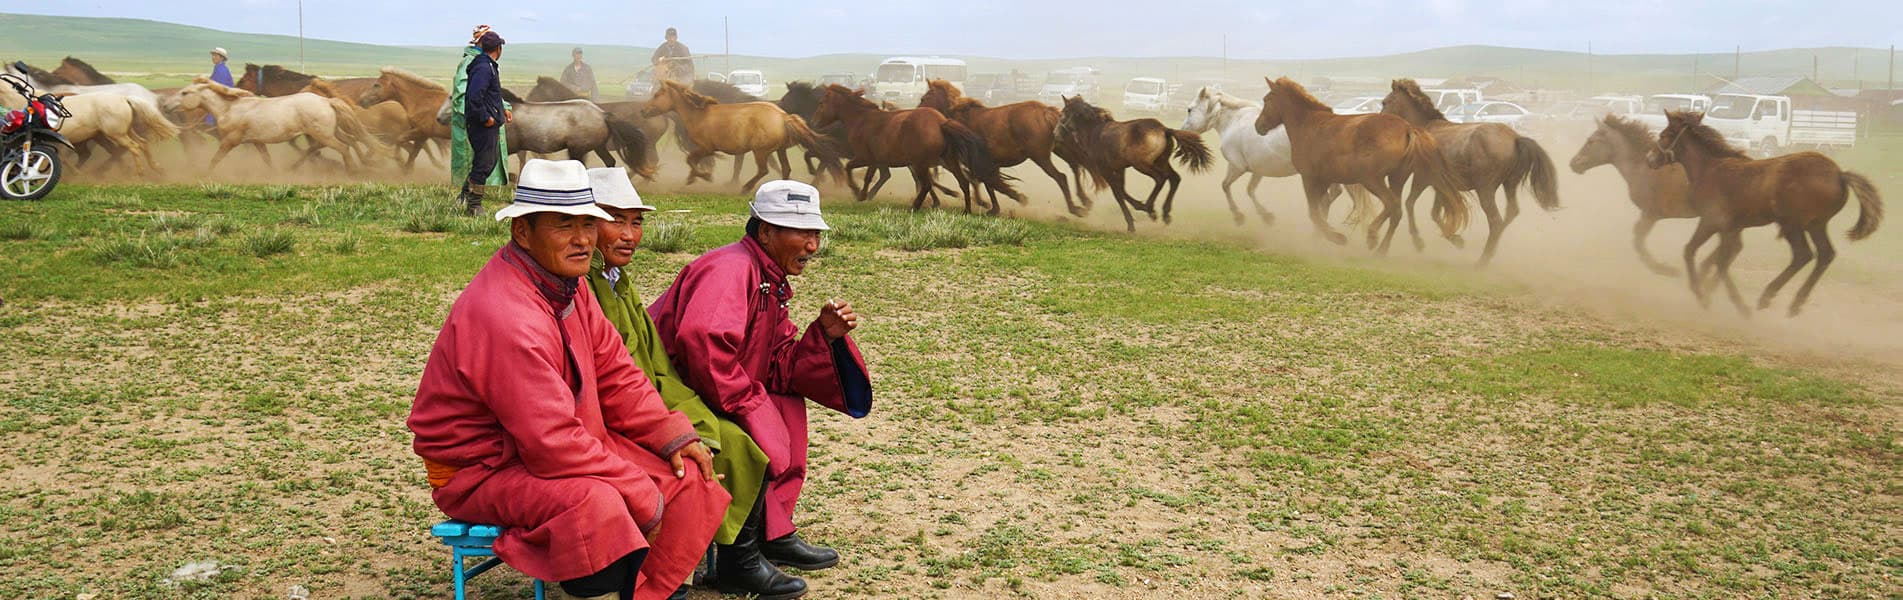 Mongolia grassland